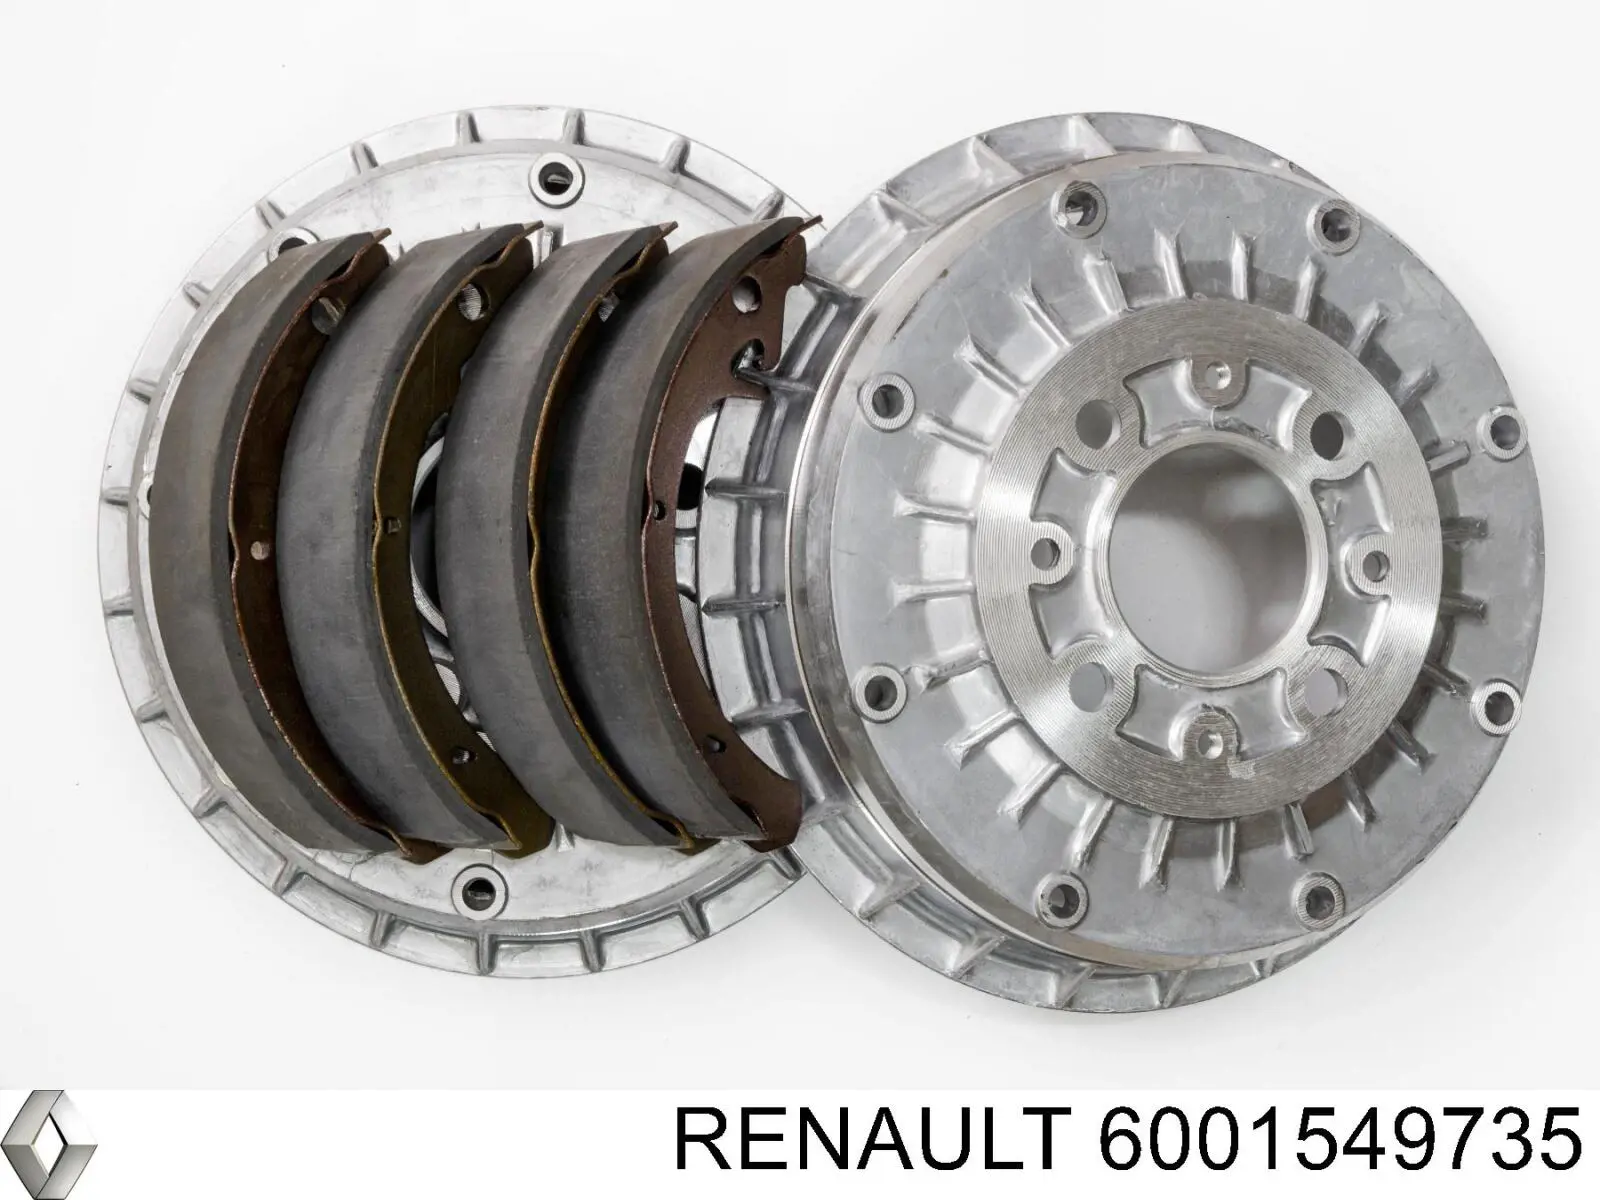 6001549735 Renault (RVI) kit de frenos de tambor, con cilindros, completo